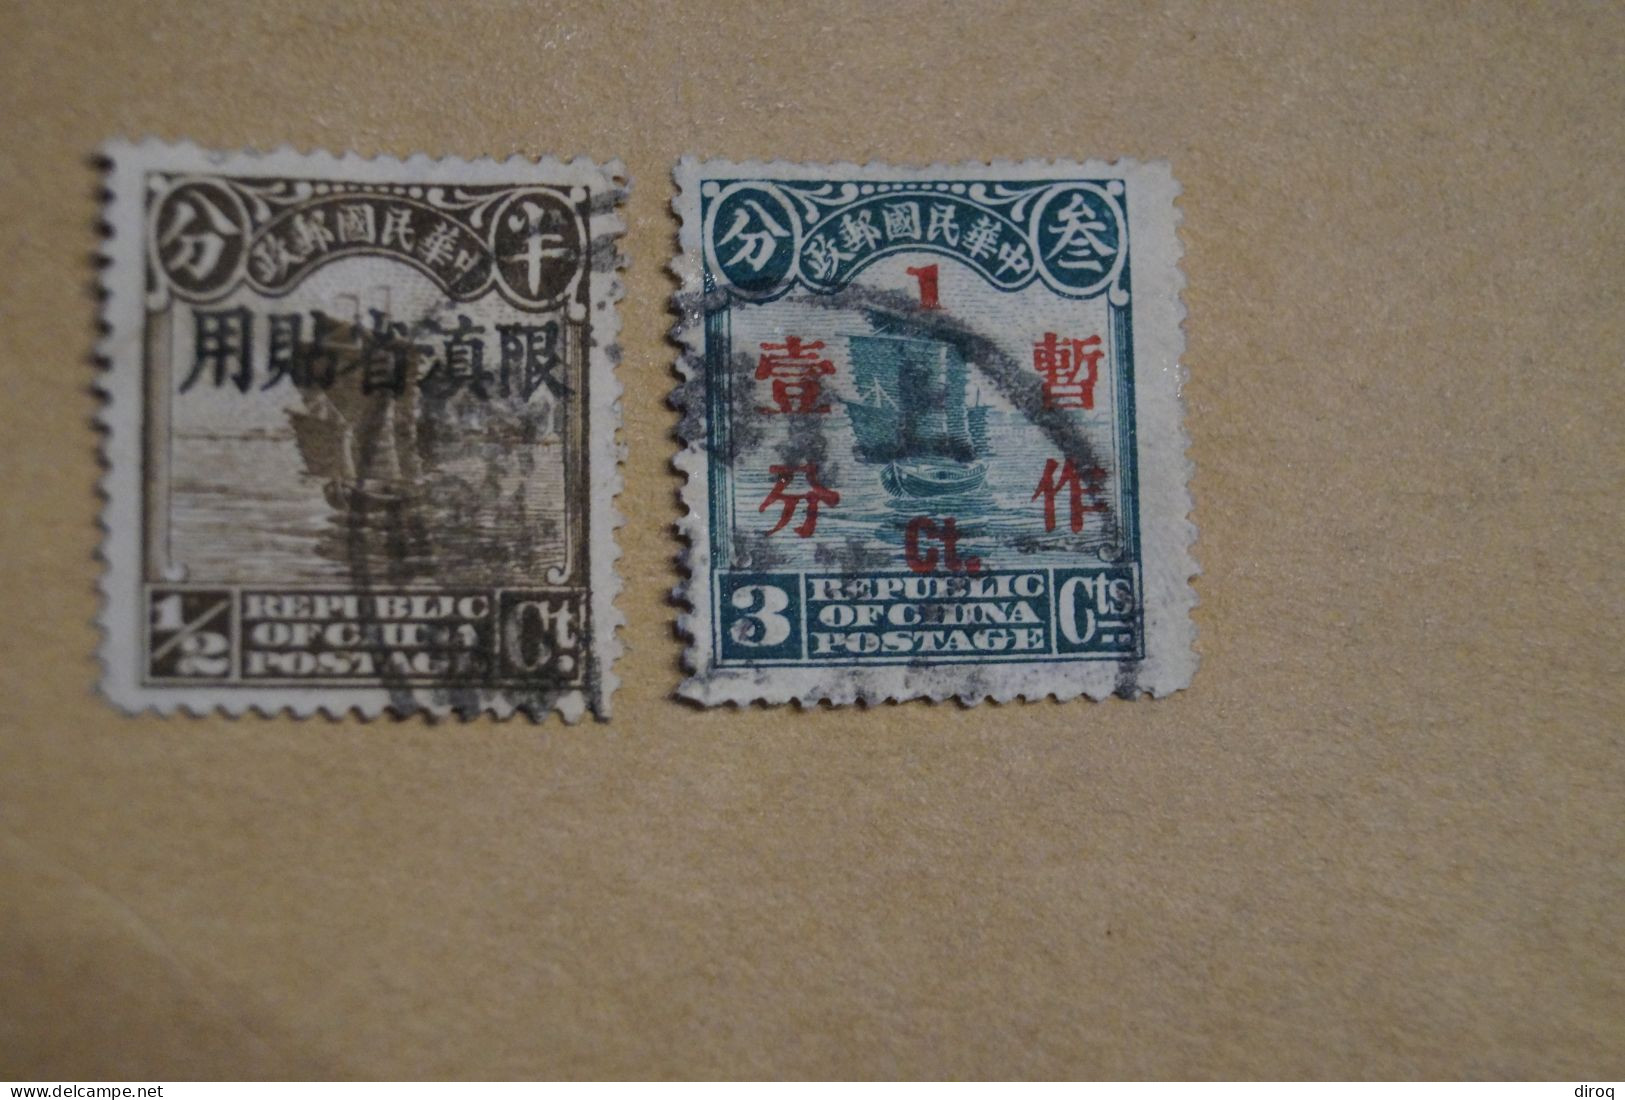 Chine,Chines,lot De 48 Timbres Oblitérés,1913 - 1923,certains Avec Surcharges, Pour Collection,collector - 1912-1949 República